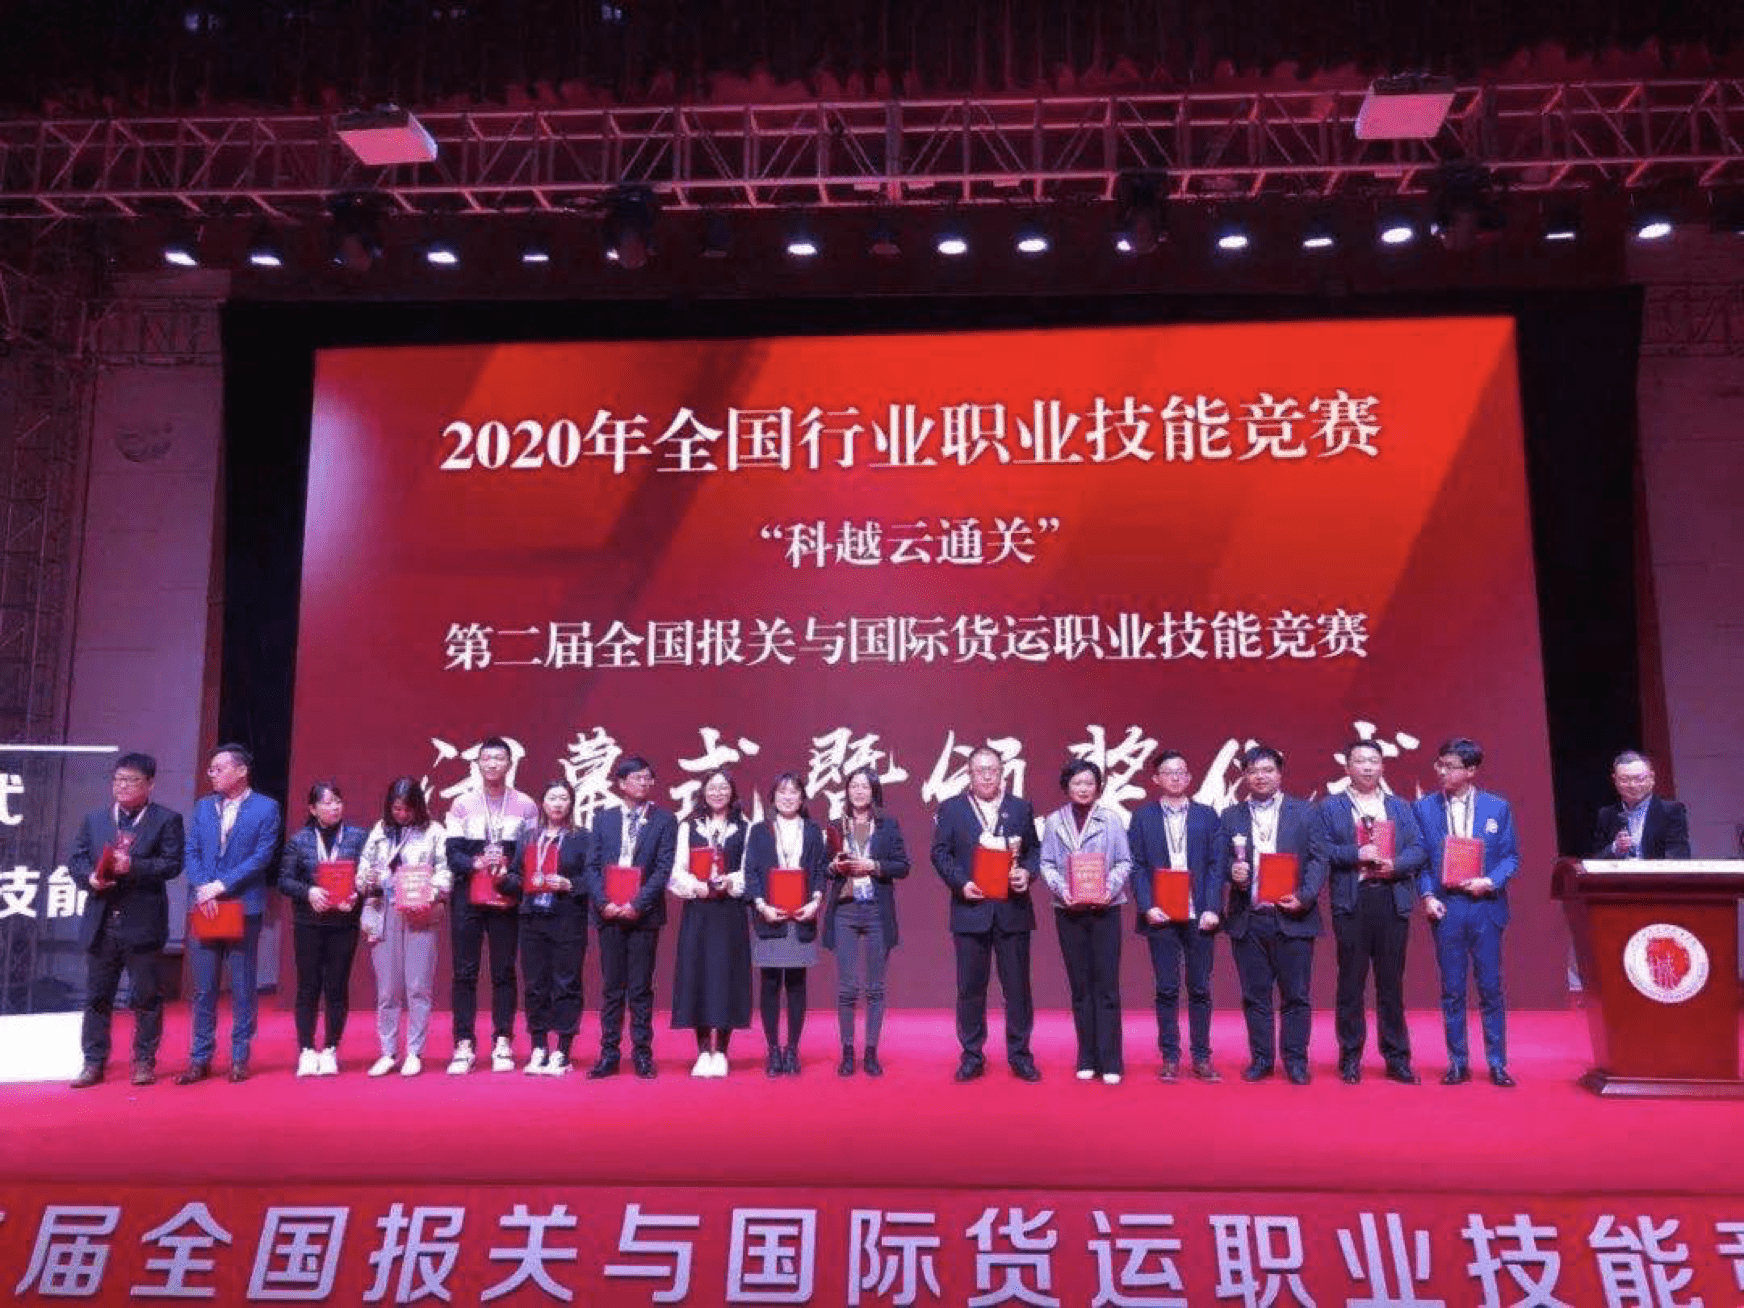 ការប្រកួតប្រជែងជំនាញវិជ្ជាជីវៈឧស្សាហកម្មជាតិឆ្នាំ 2020" ត្រូវបានធ្វើឡើងដោយ CCBA & Oujian Group នៅទីក្រុង Chongqing